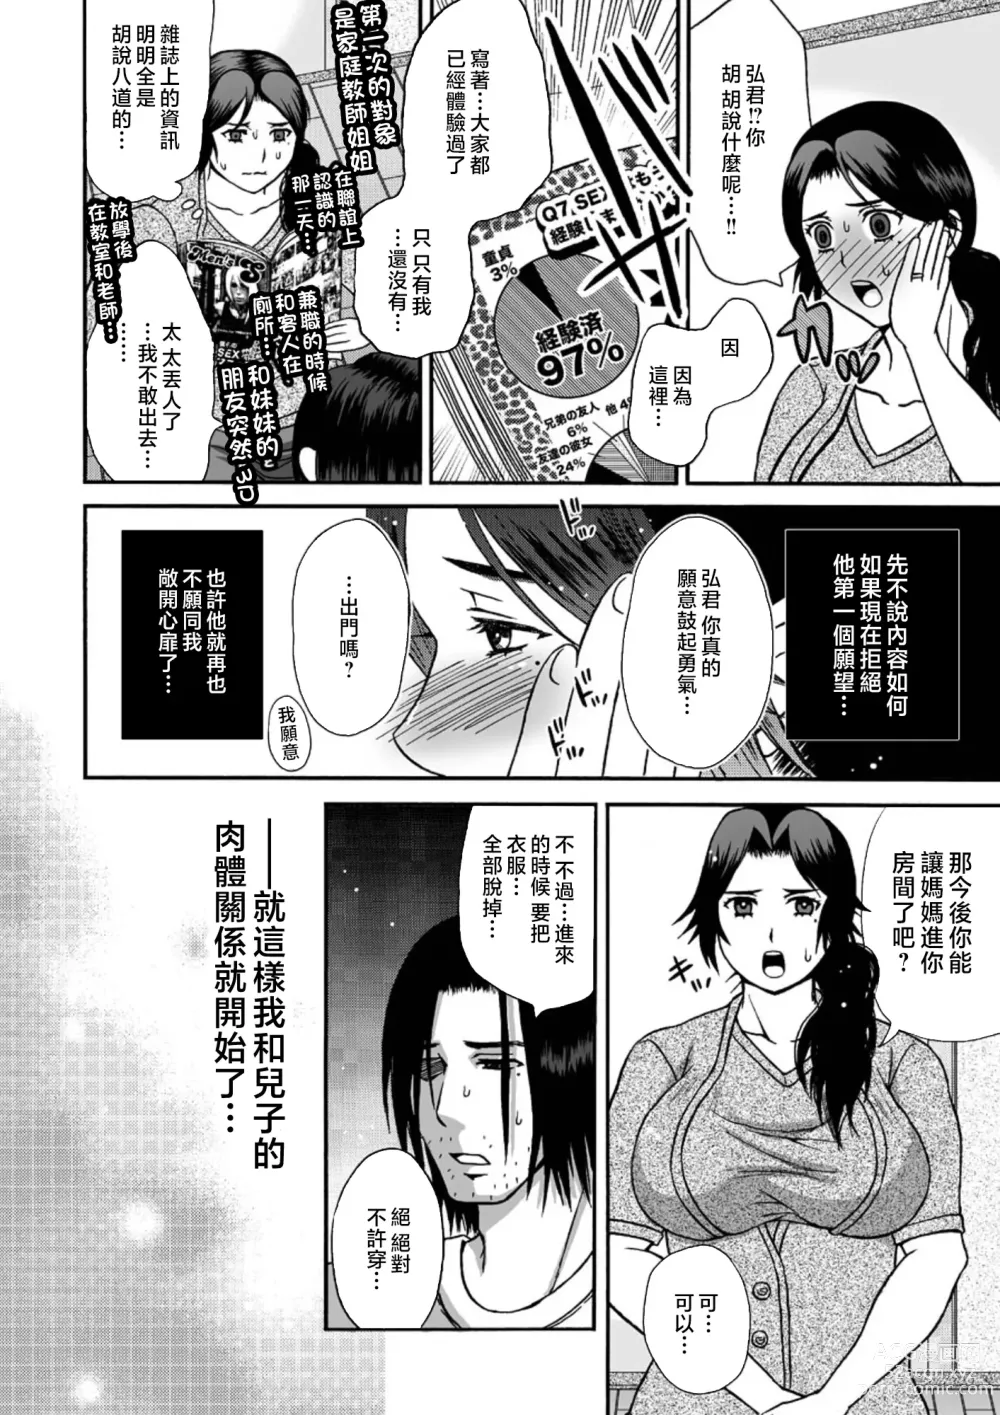 Page 4 of doujinshi Musuko no Heya de 1-2